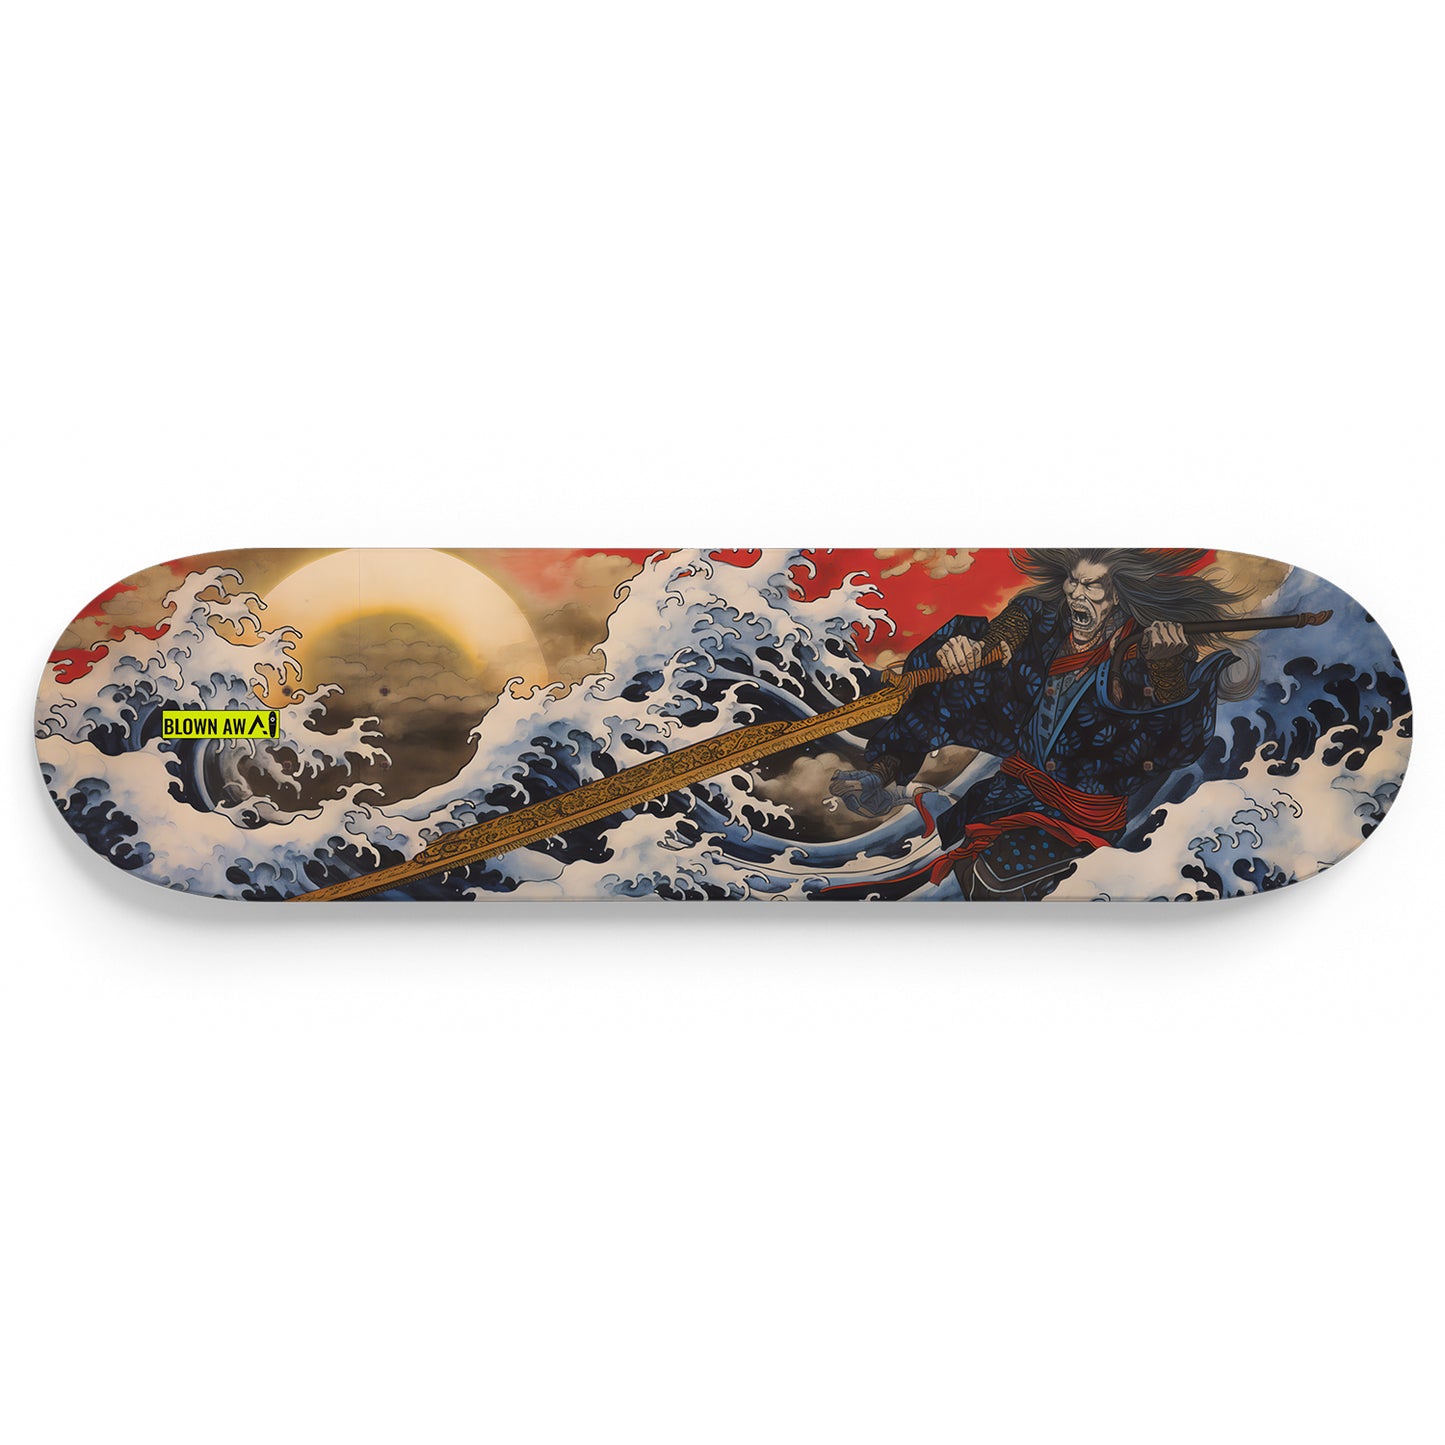 Mad Samurai In The Great Wave Of Kanagawa Single Skateboard Wall Art